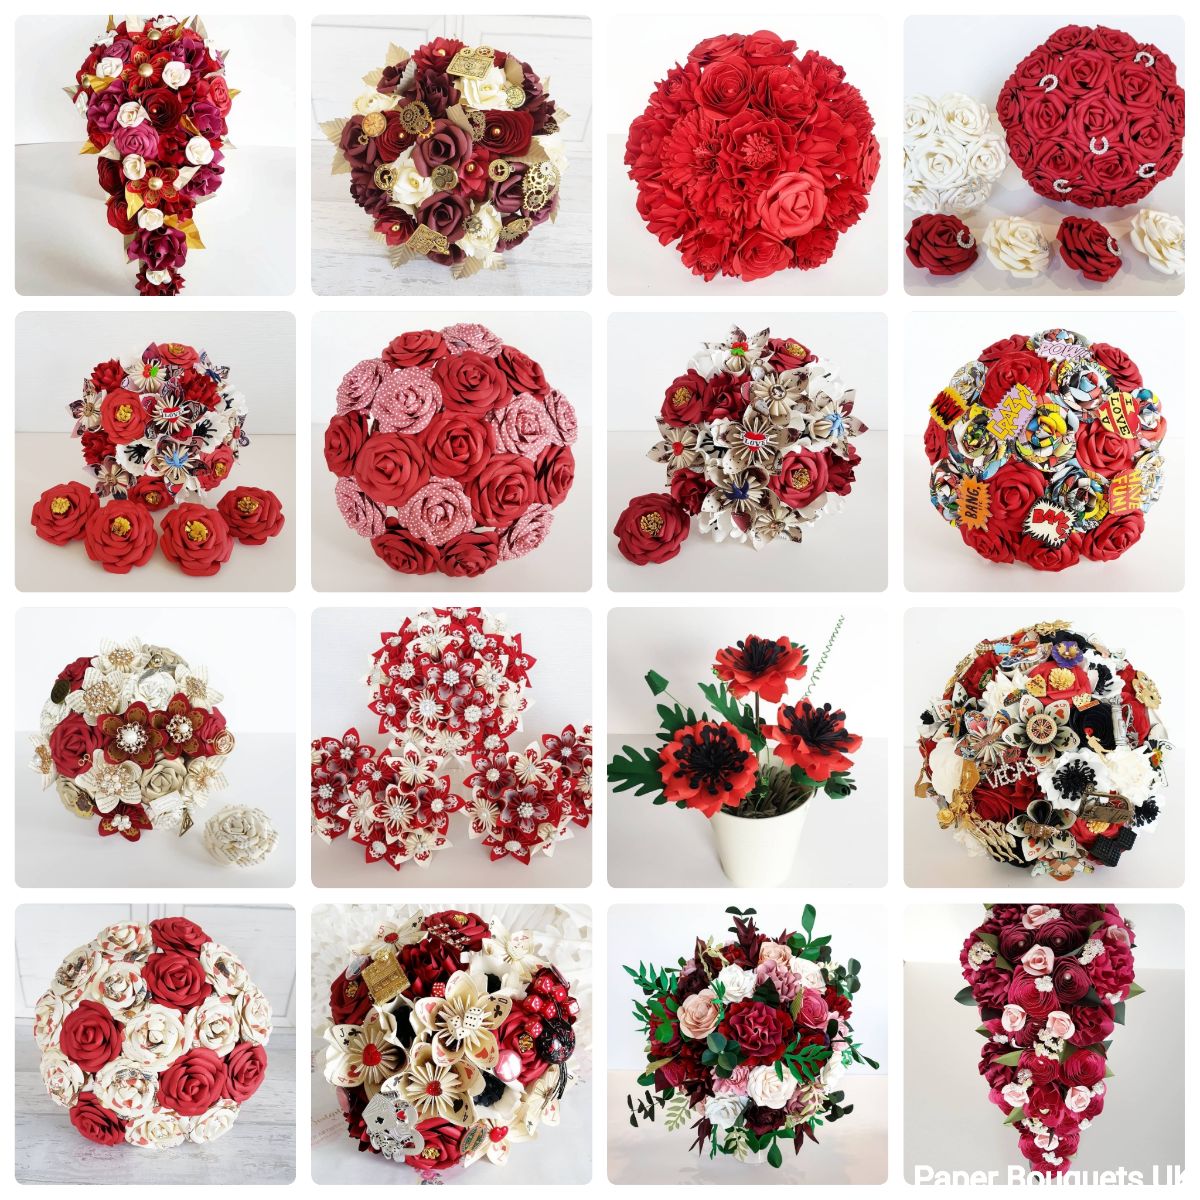 Paper Bouquets UK-Image-102